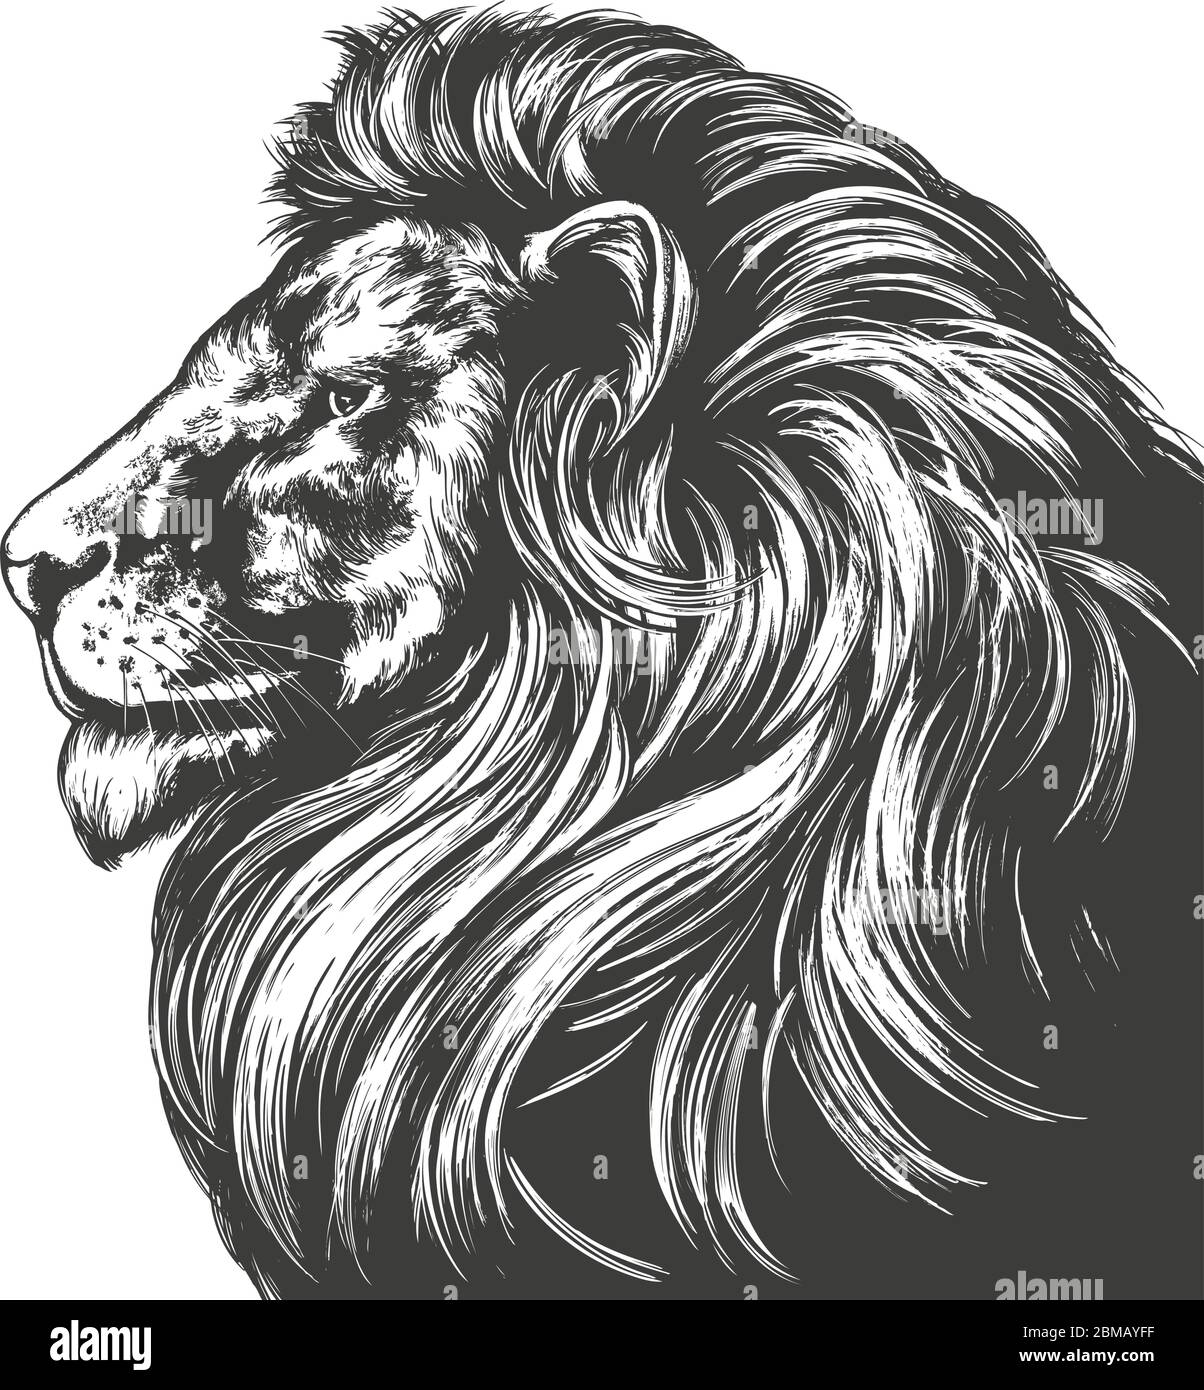 leone animale, re delle bestie, disegno vettoriale disegnato a mano abbozzo realistico. Illustrazione Vettoriale